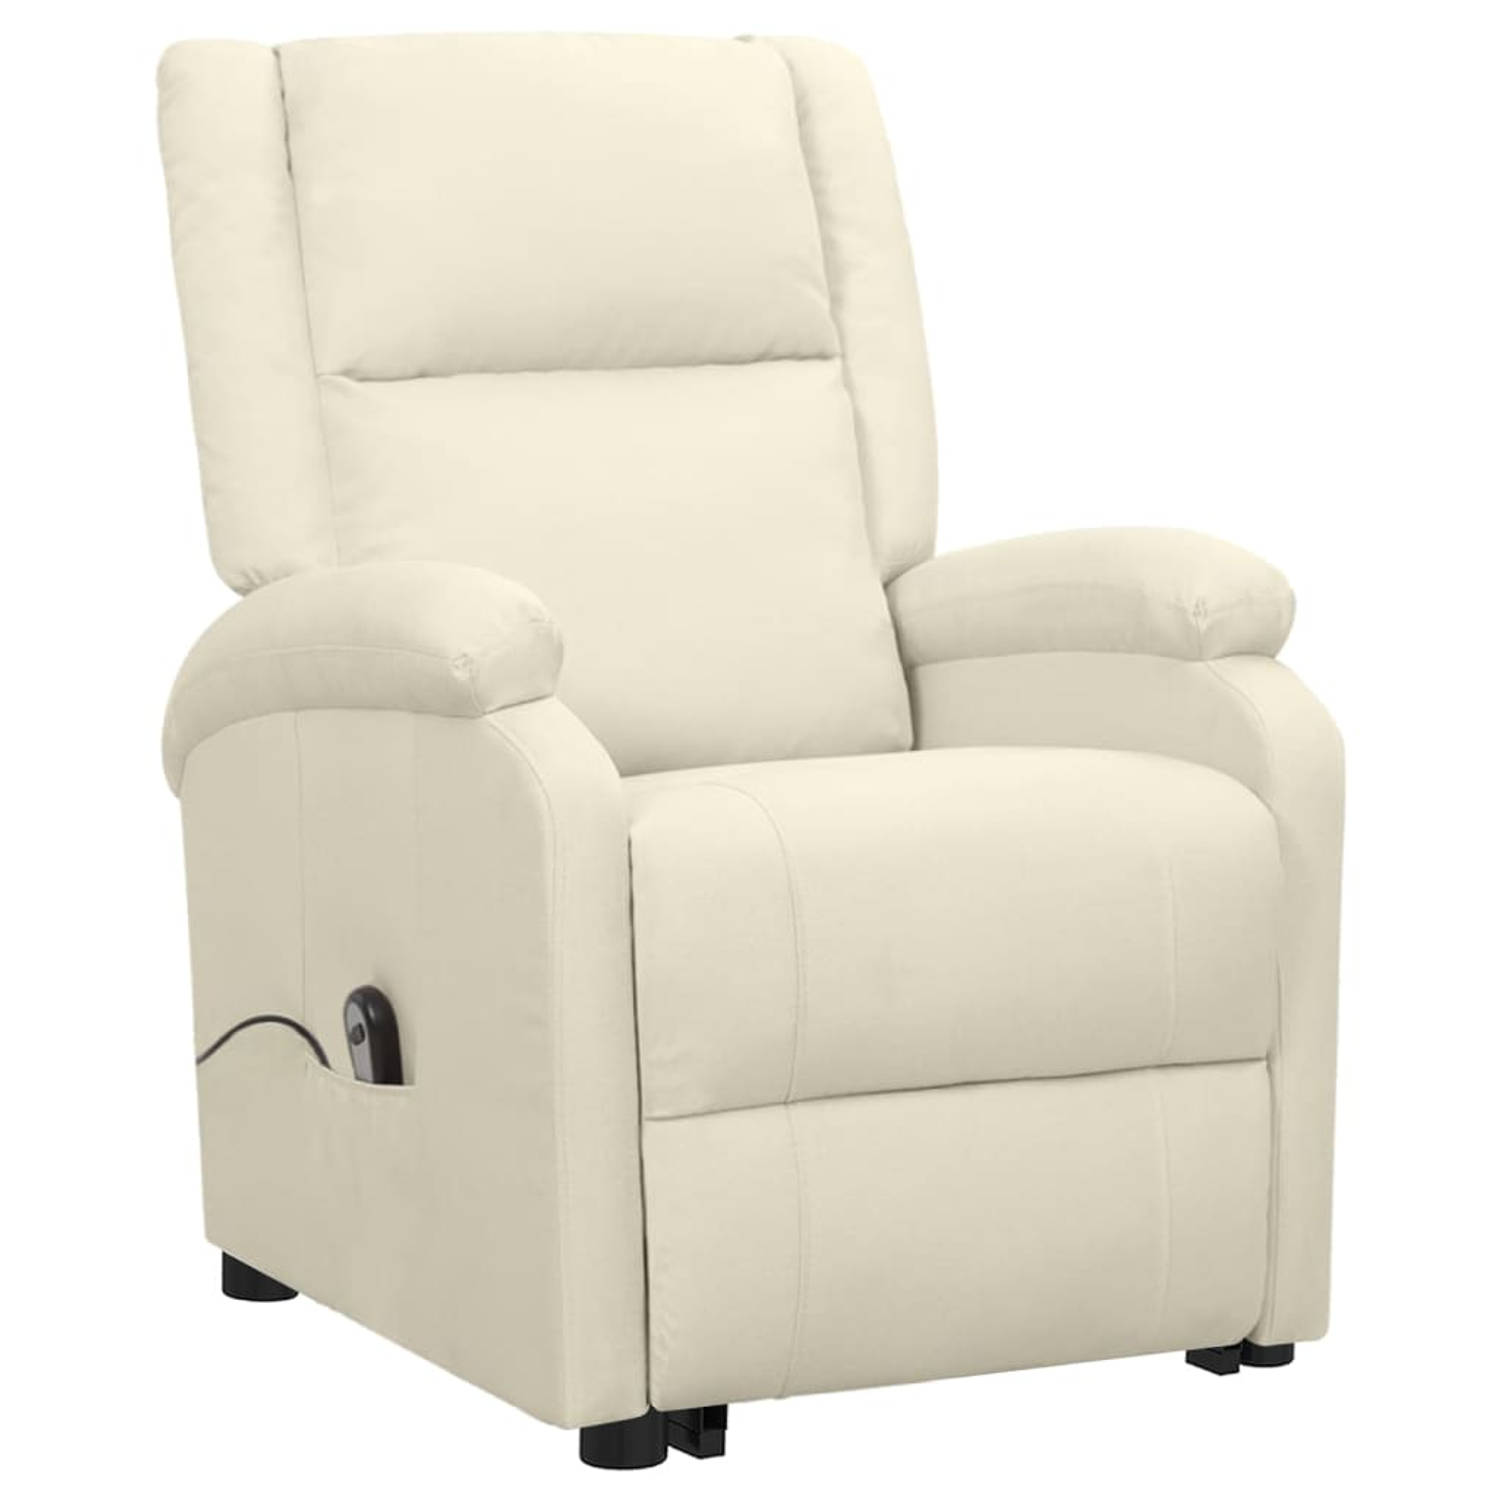 The Living Store Sta-op-stoel - Relaxfauteuil - Elektronisch verstelbaar - Geschikt voor ouderen en mensen met rugklachten - Crème - Afmetingen- 70 x 89 x 103.5 cm - Montage vereis